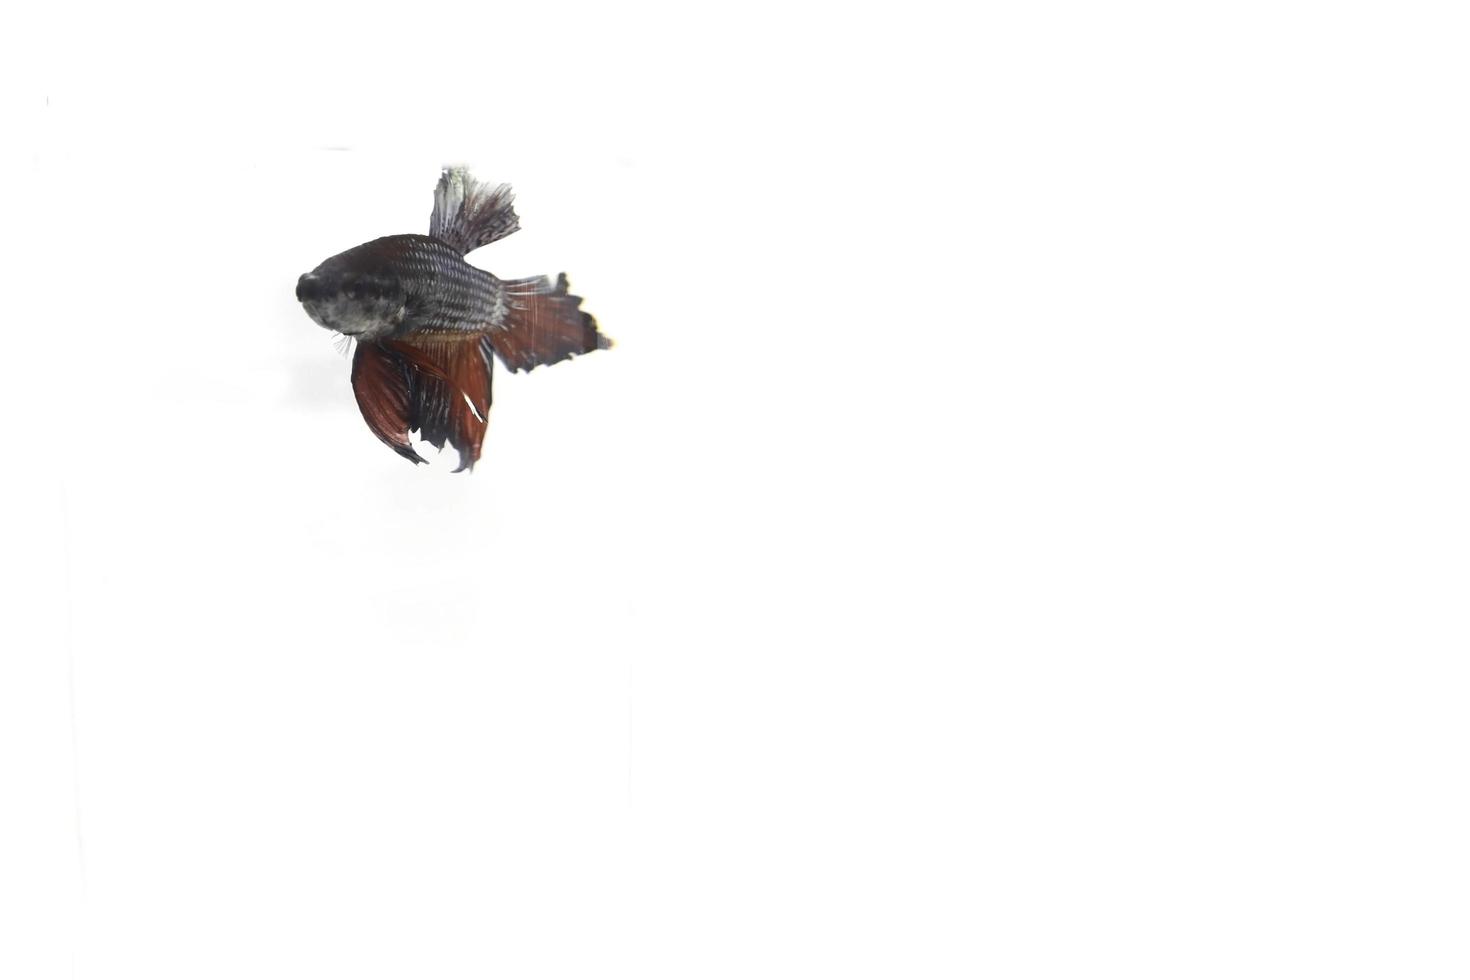 un pez betta autóctono agresivo o pez betta de varios colores sobre un fondo blanco que abunda en tailandia y se exporta. foto